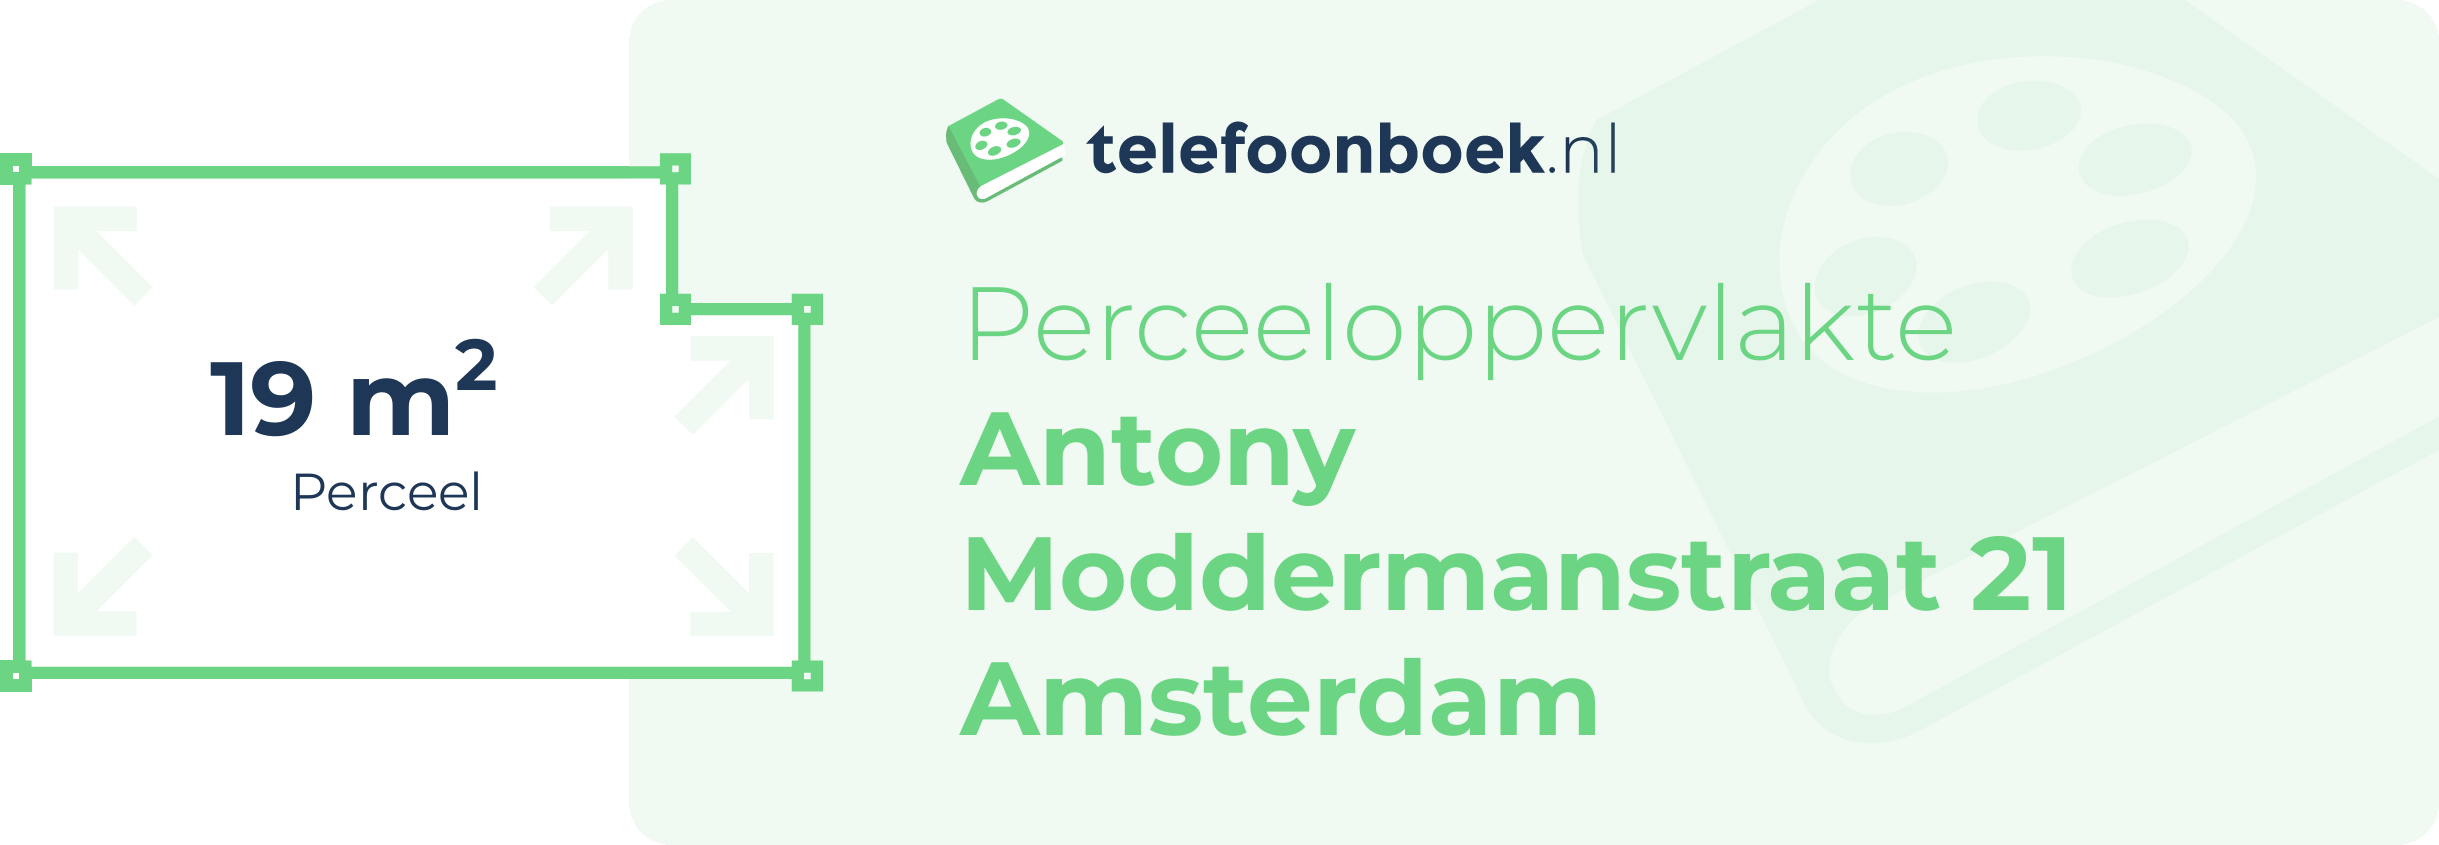 Perceeloppervlakte Antony Moddermanstraat 21 Amsterdam